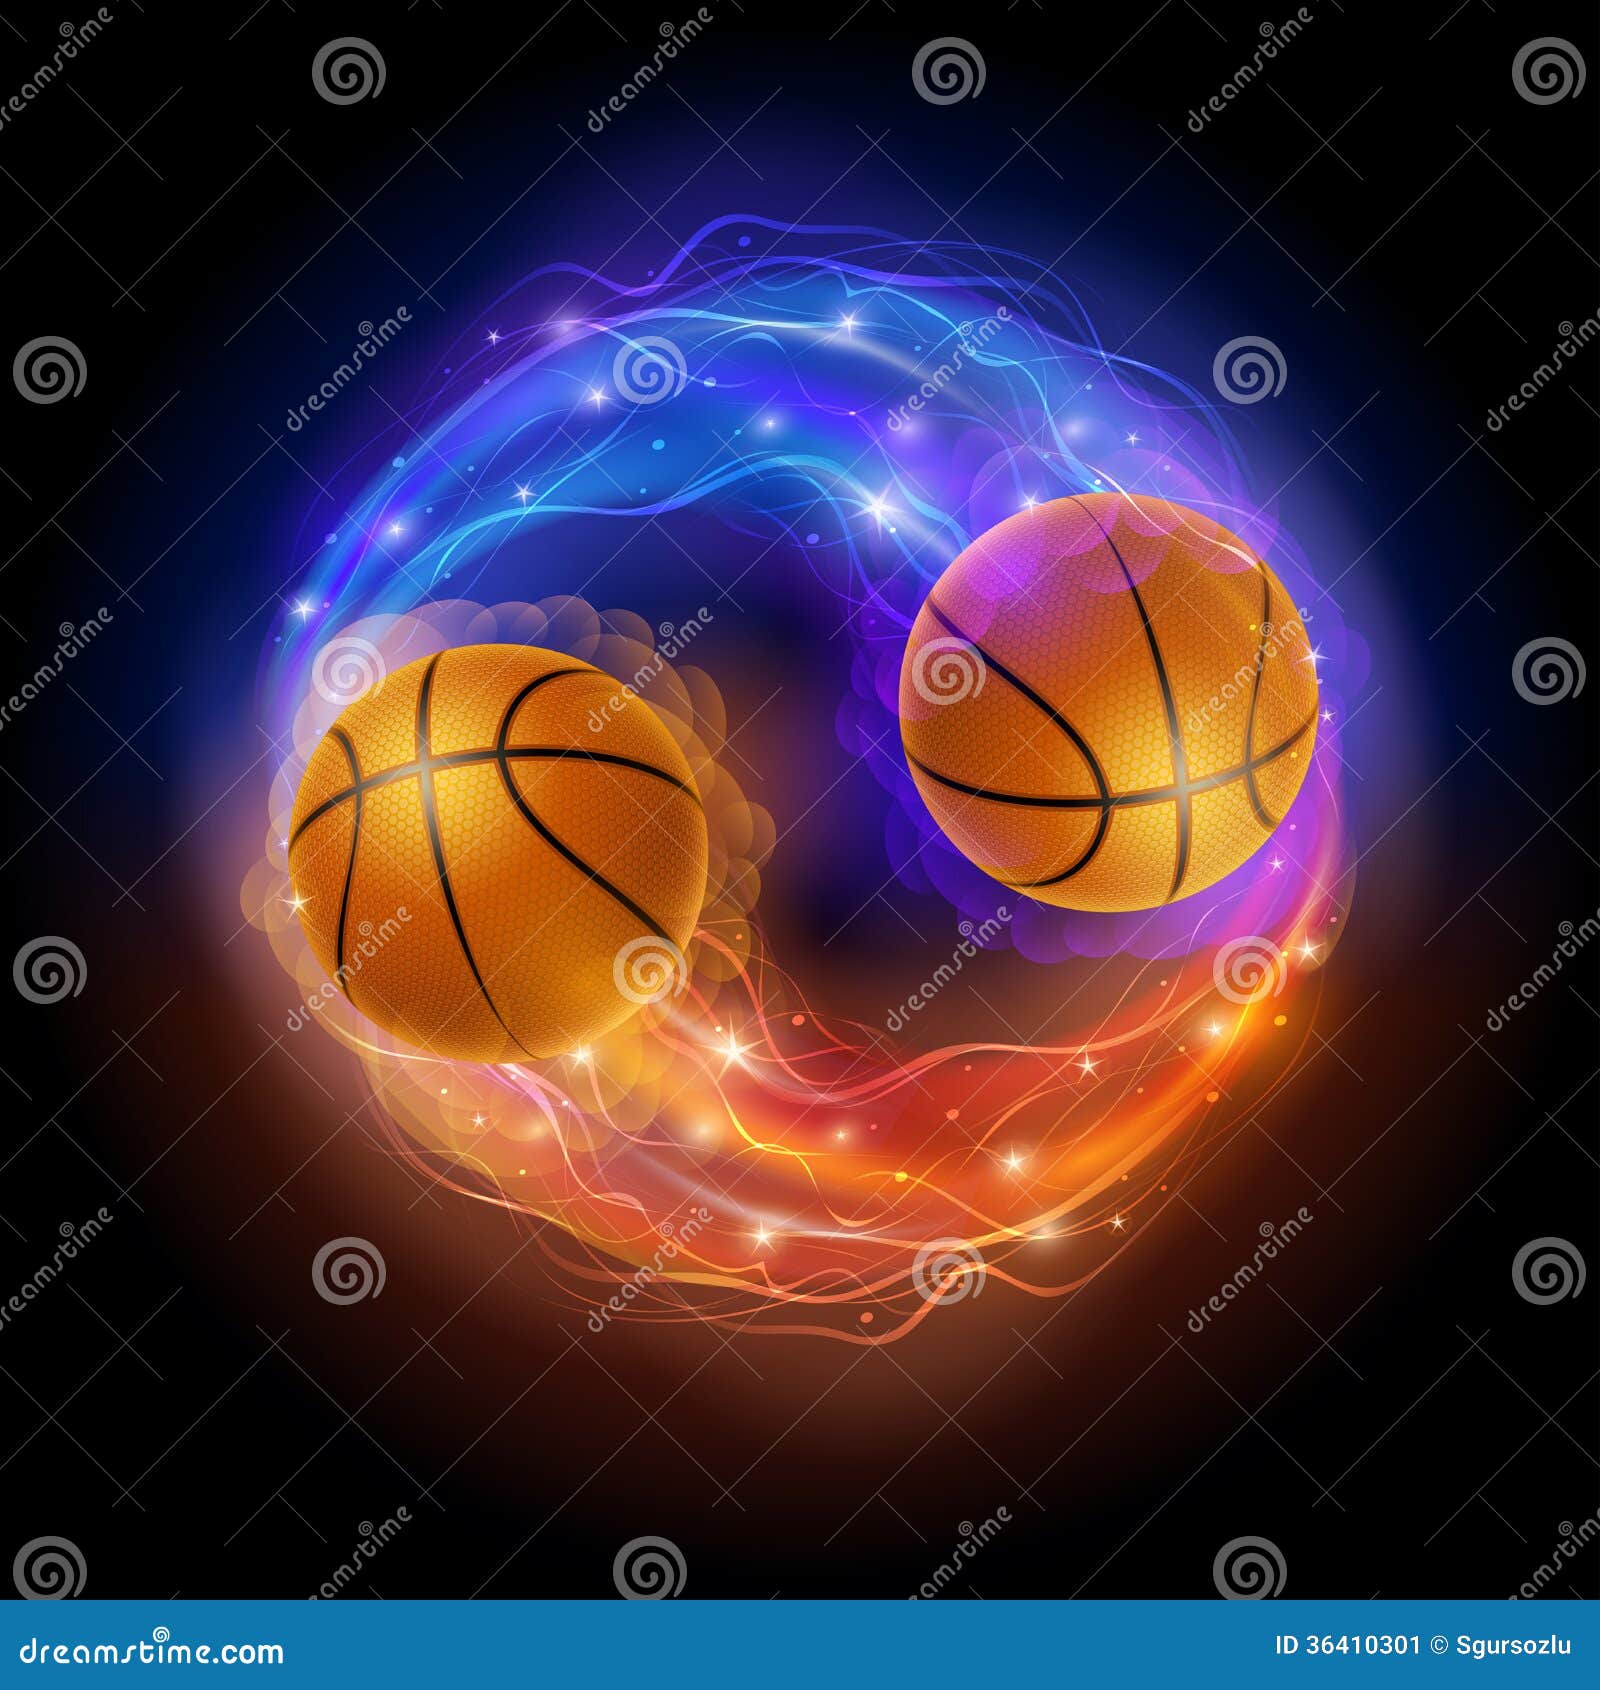 Basketball Comet Stock Image - Image: 36410301